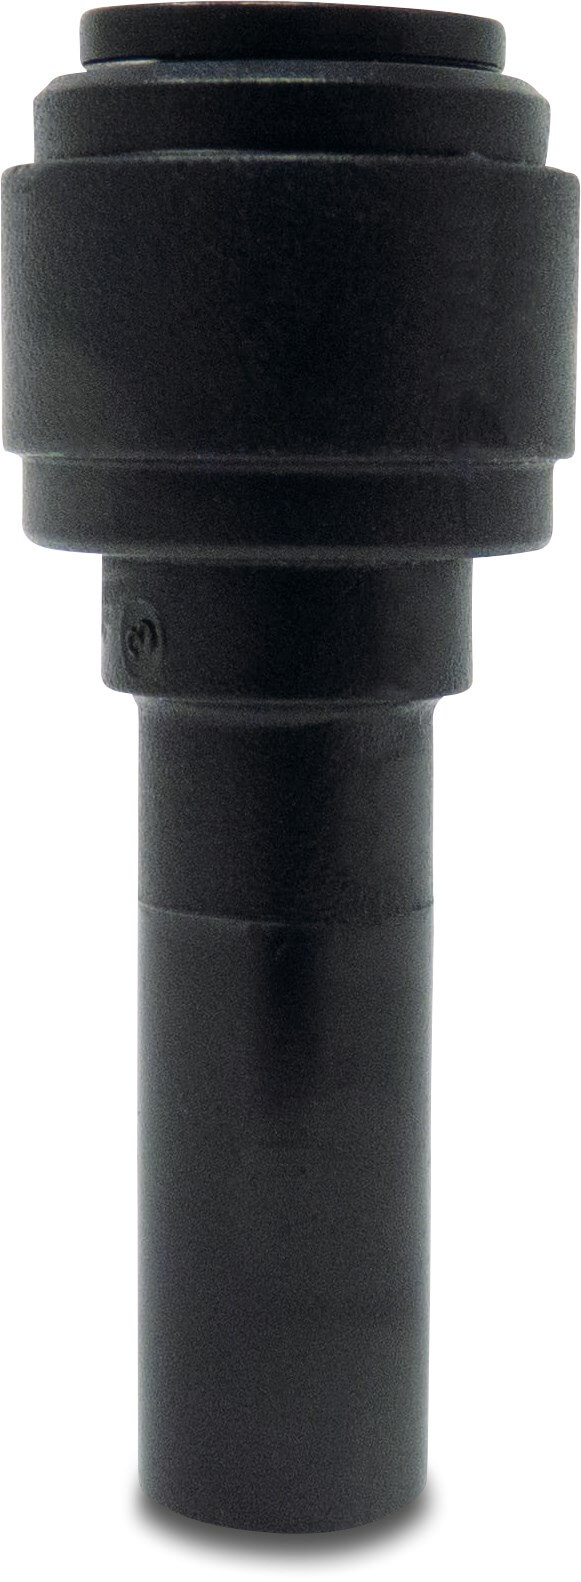 Verloopkoppeling POM 6 mm x 4 mm spie x insteek 20bar zwart WRAS type Aquaspeed